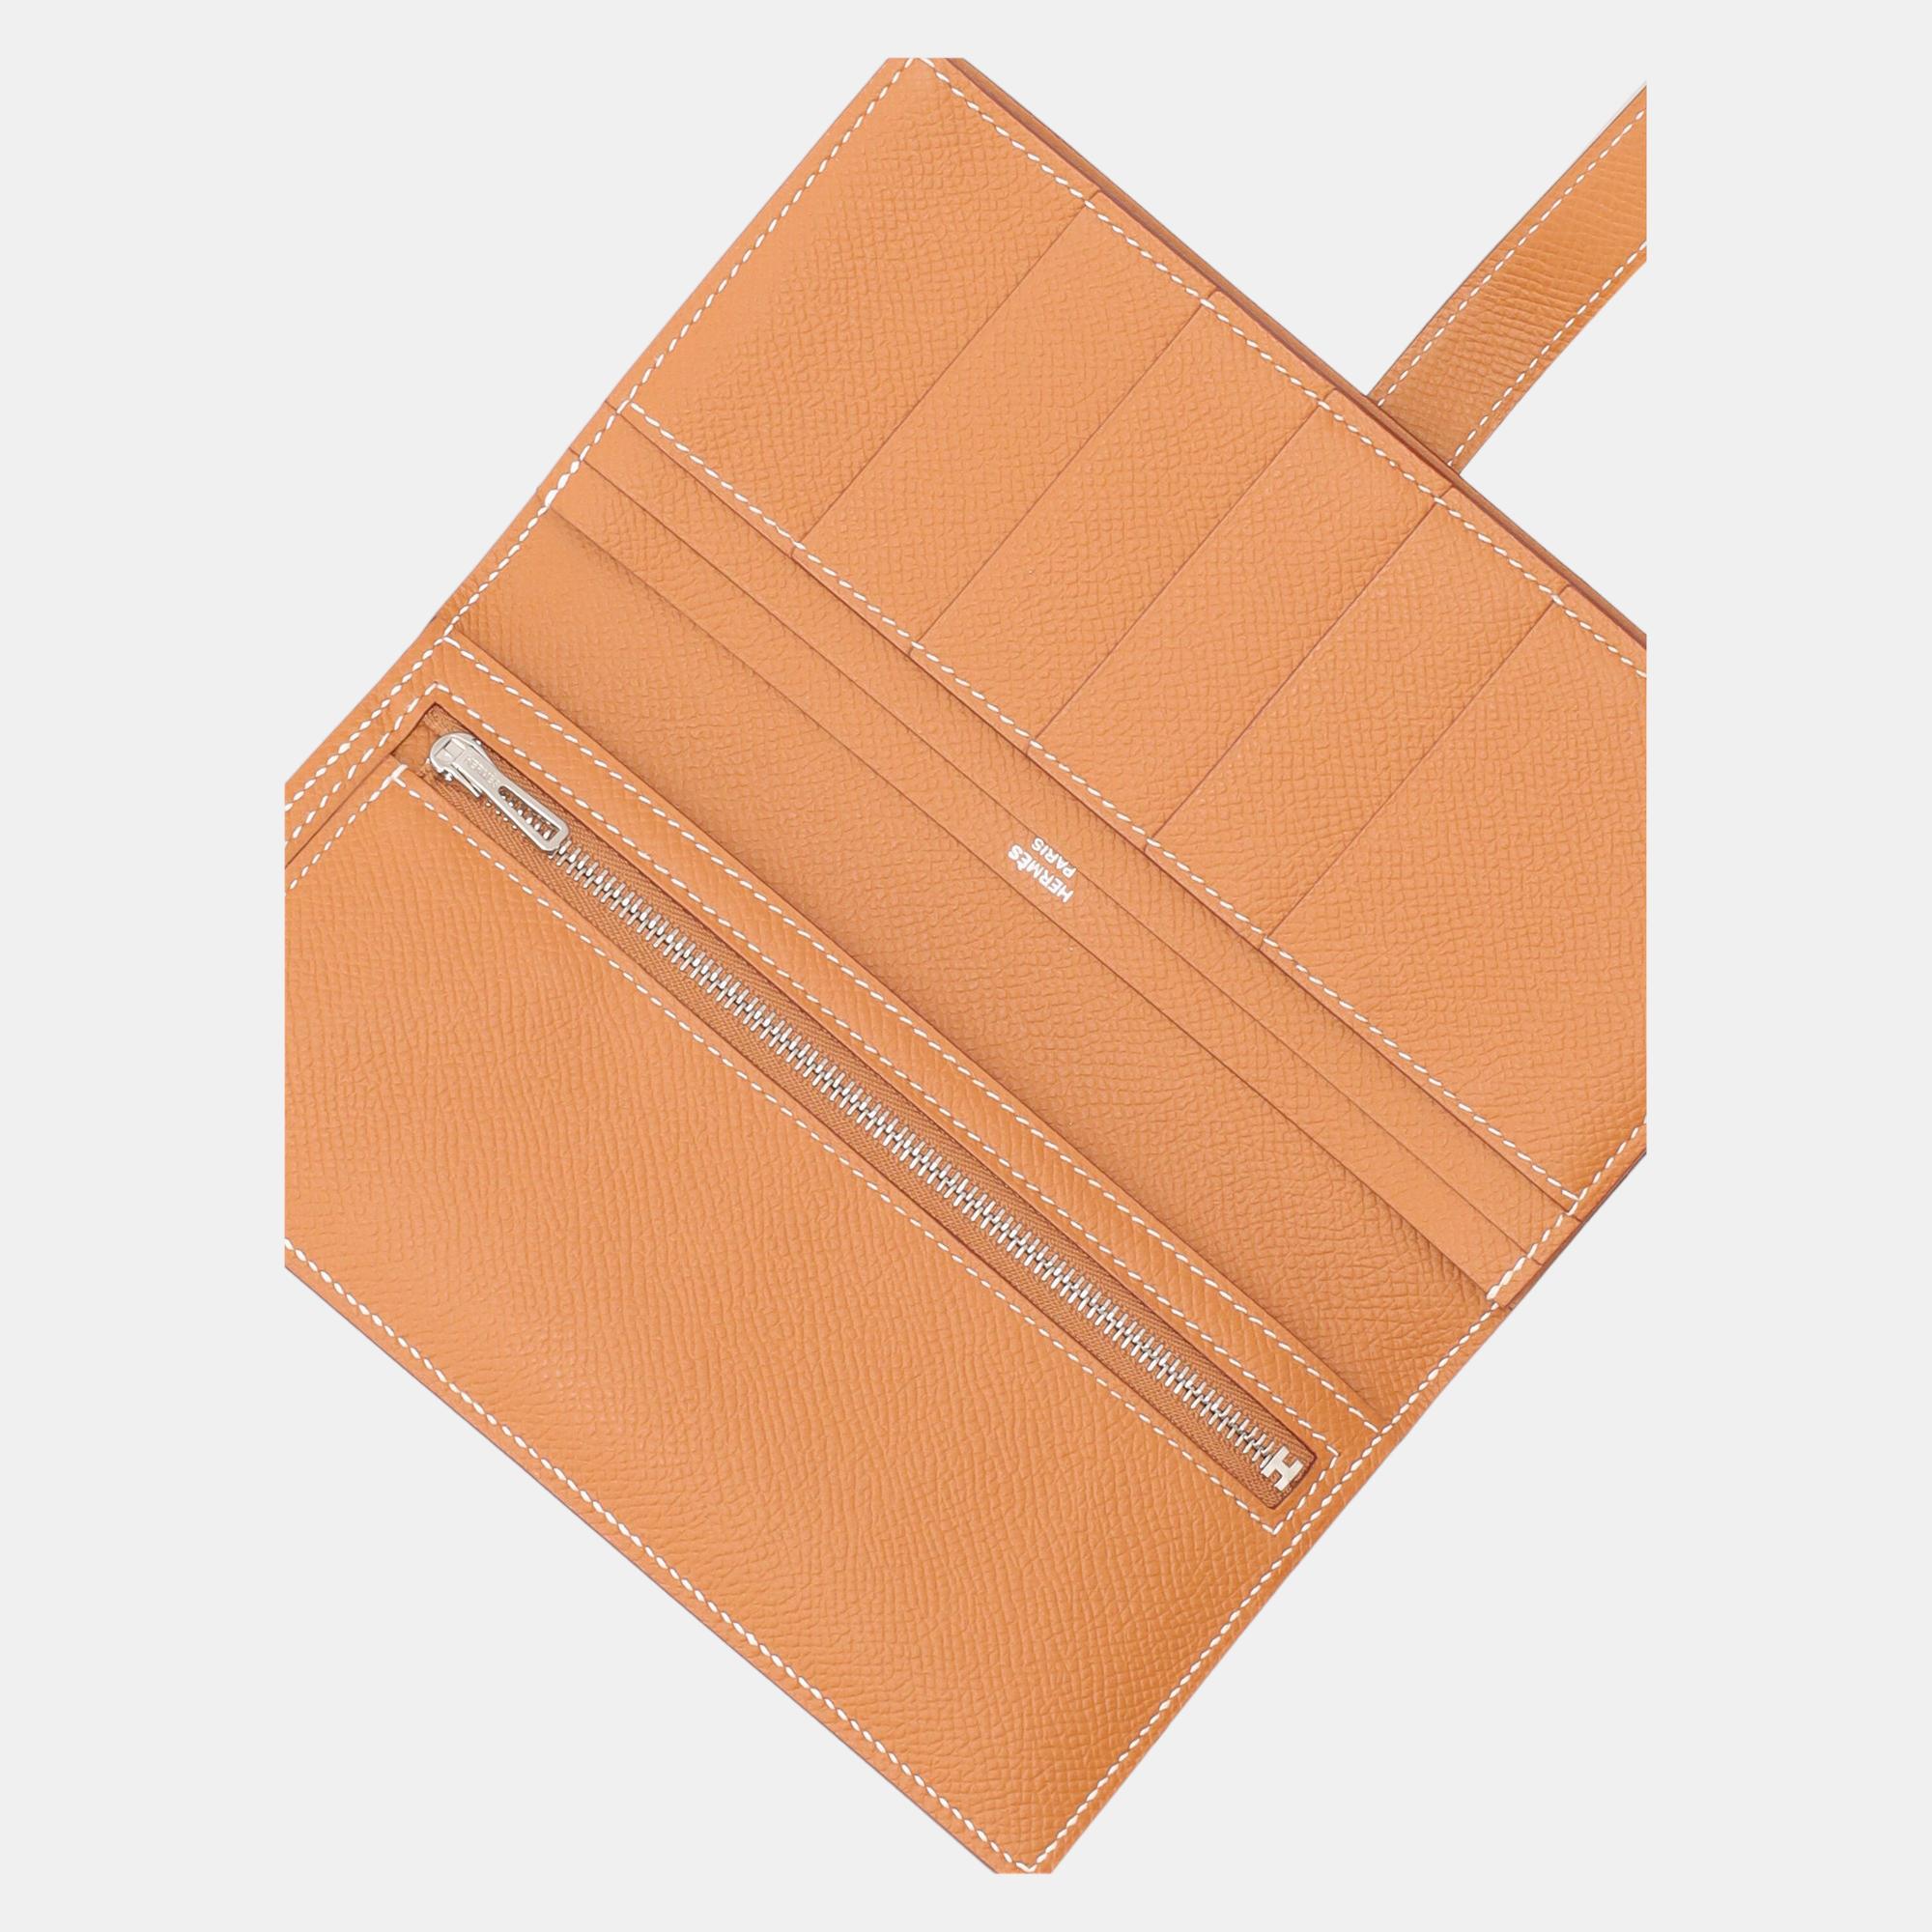 HermÃ¨s Women's Leather Wallet - Beige - One Size